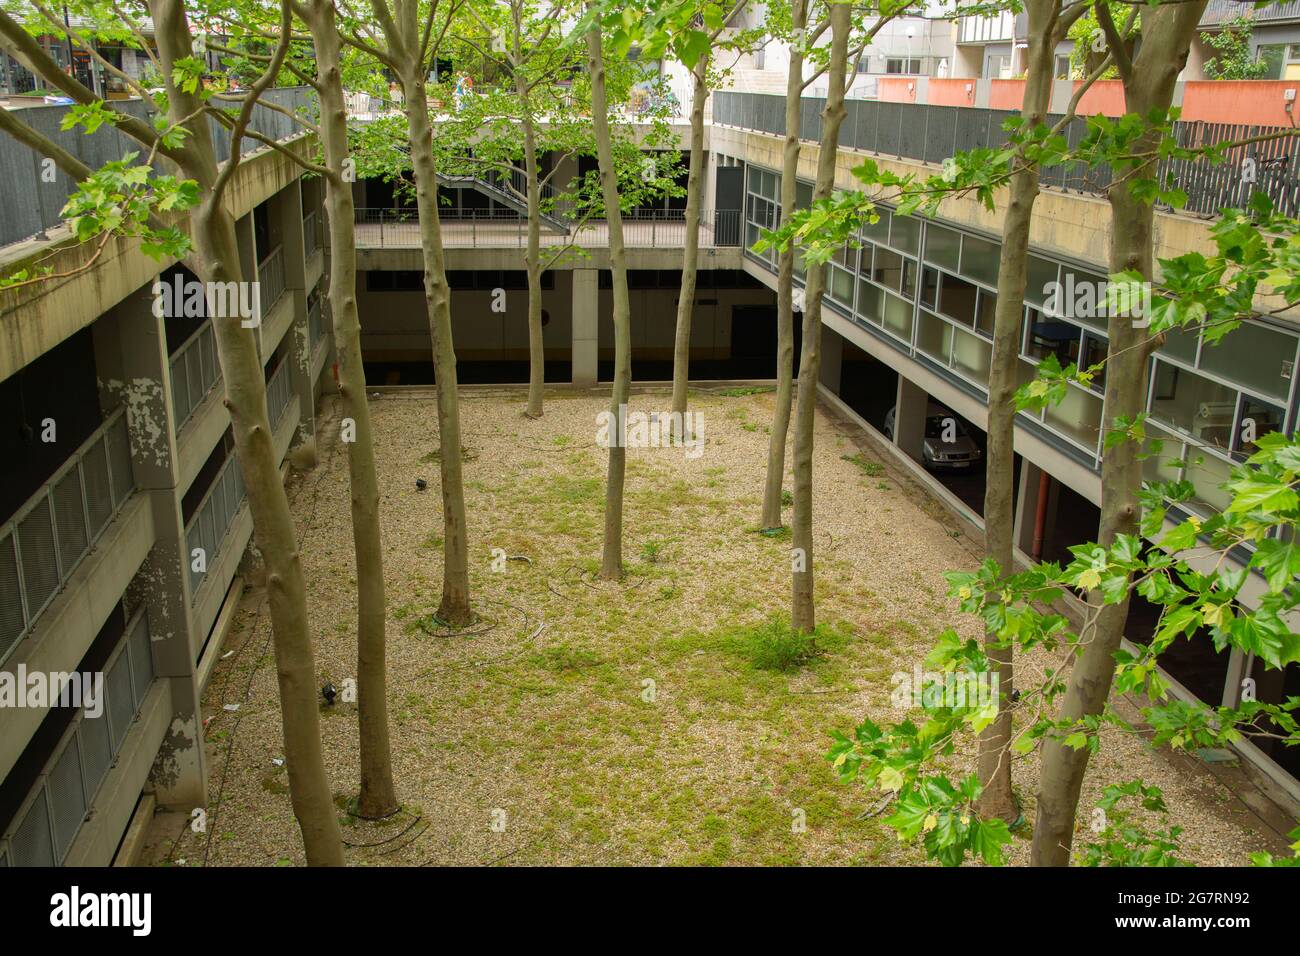 Grüne Bäume in Mitten von Gebäuden und Garagen Foto Stock